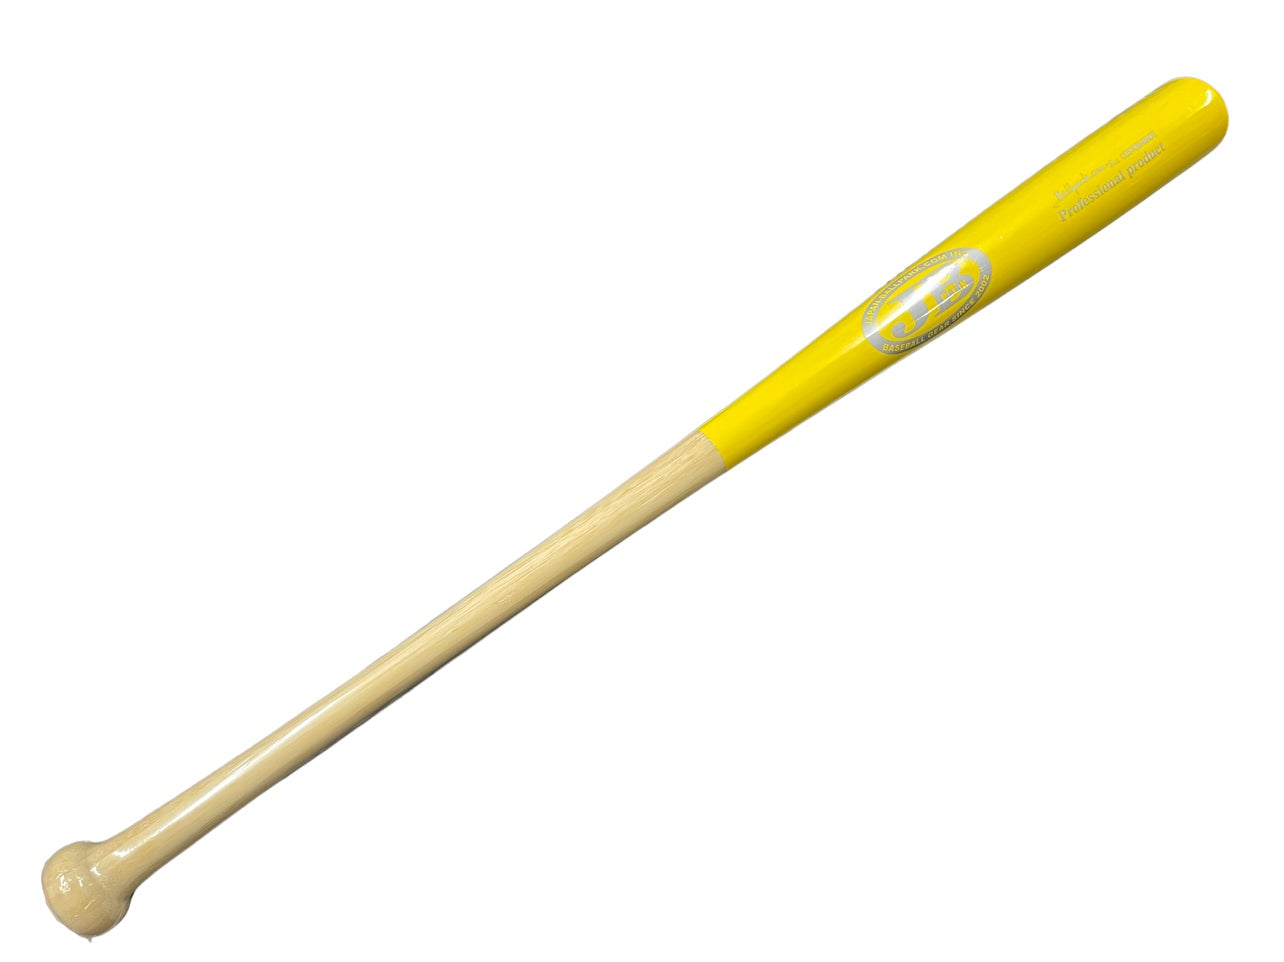 【アウトレット】90cmトレーニング竹バット/90㎝/850g/マーク:シルバー